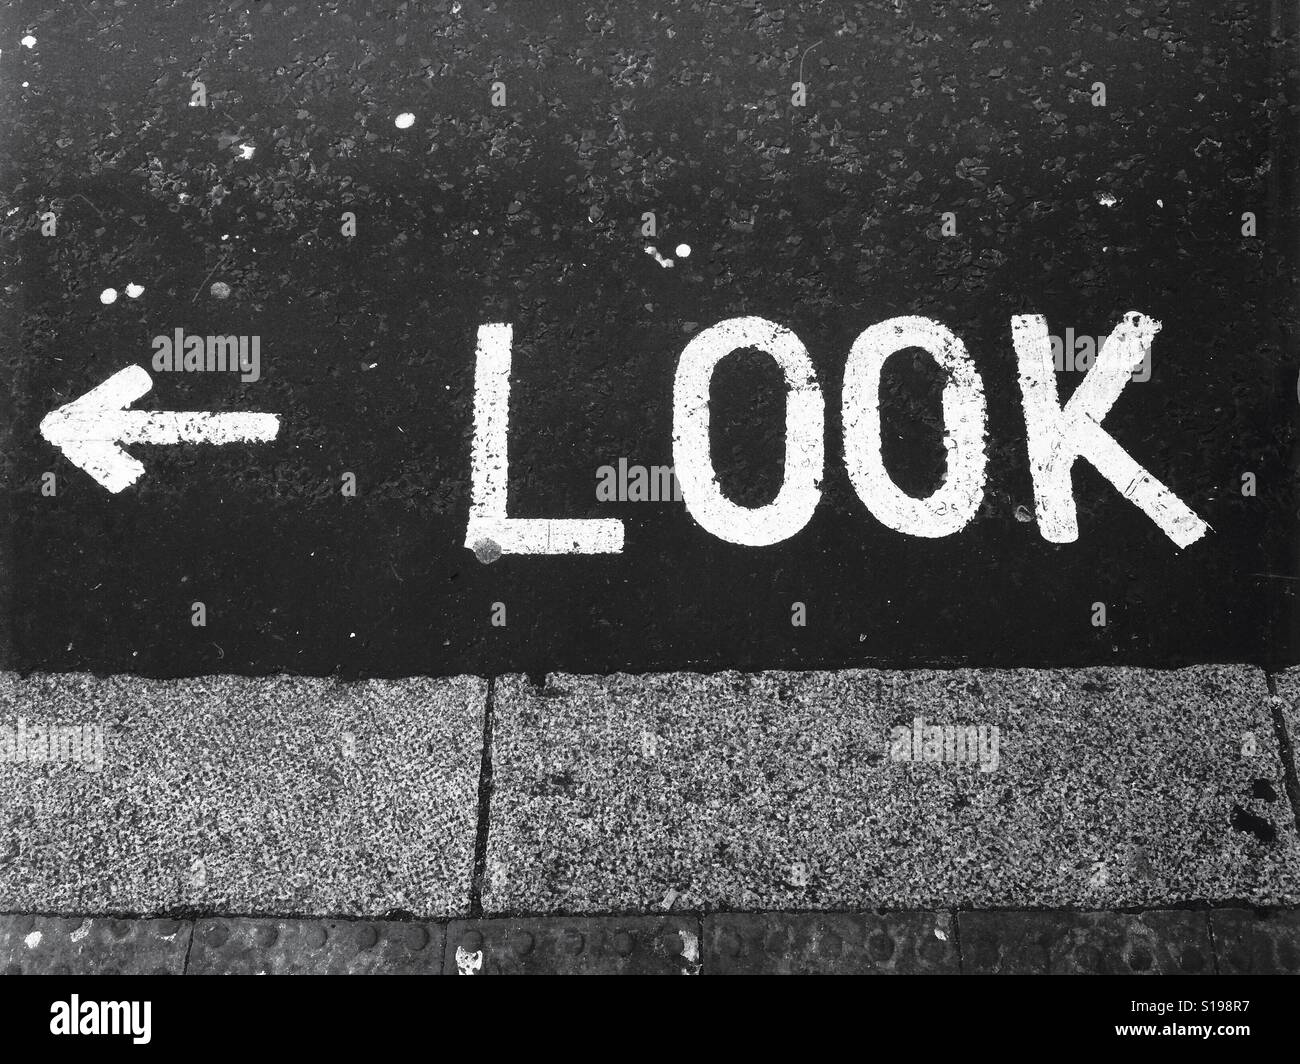 Guardare a sinistra segno. La parola 'look' dipinta sulla strada in grassetto bianco lettere maiuscole, con la freccia rivolta verso sinistra. Foto Stock